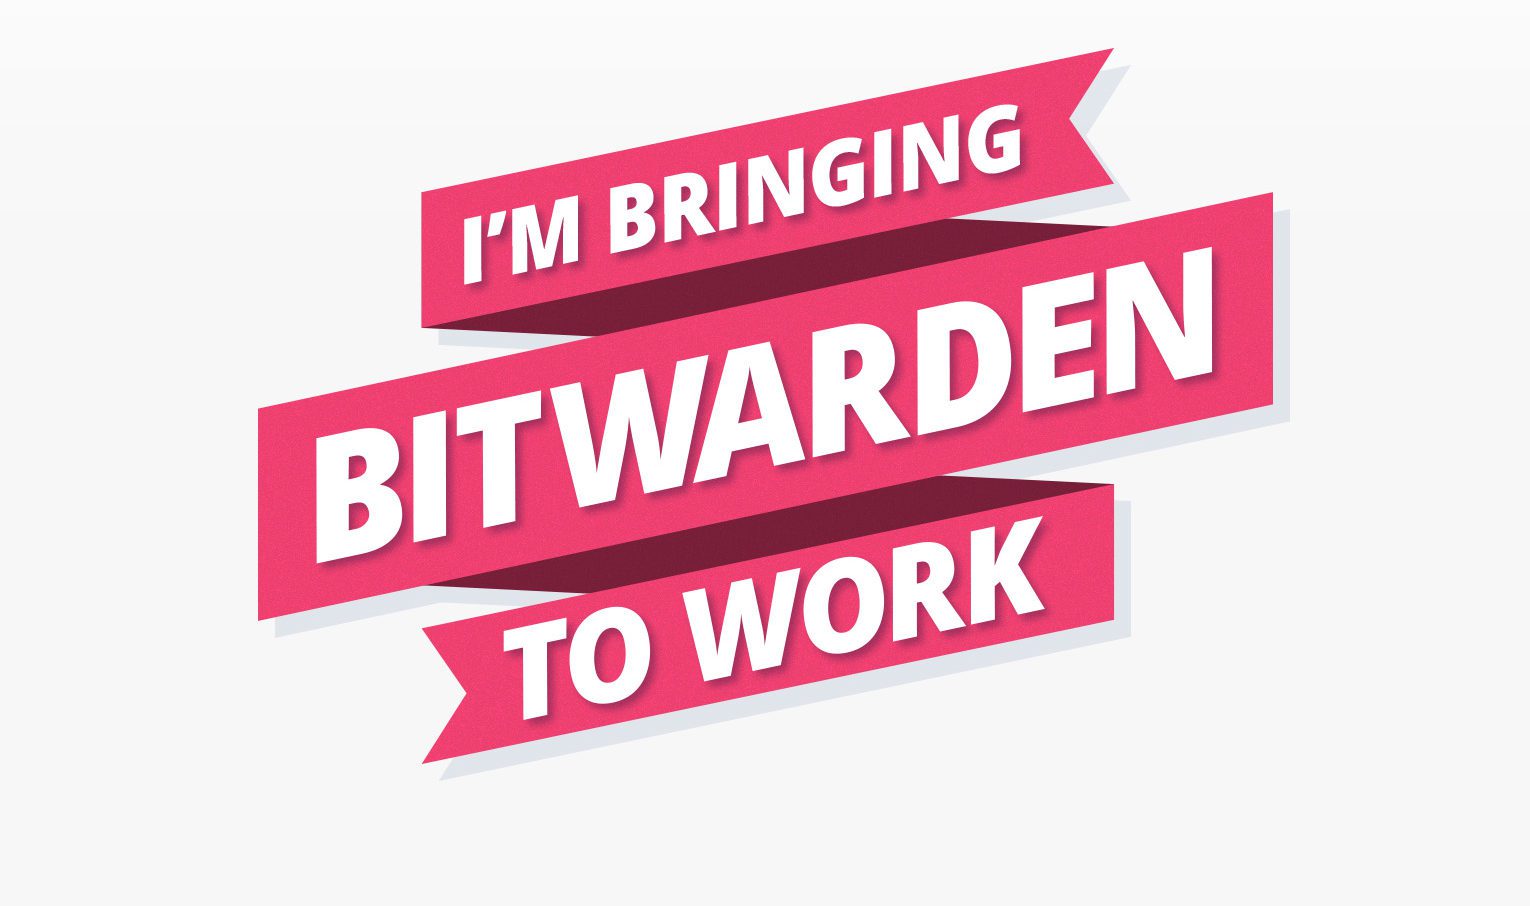 I'm Bringing Bitwarden to Work